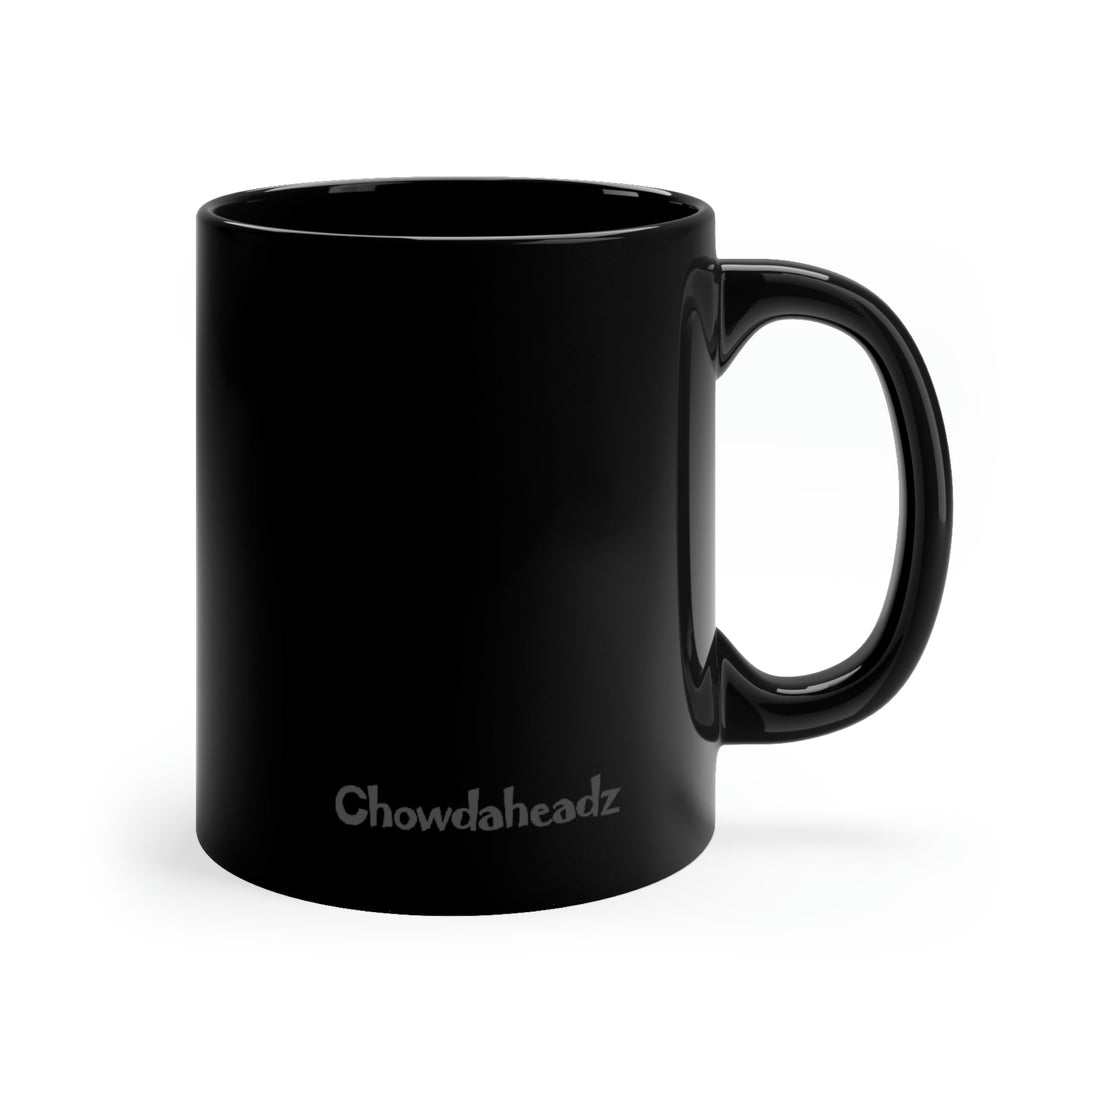 Weathers Gonna Weather 11oz Coffee Mug - Chowdaheadz